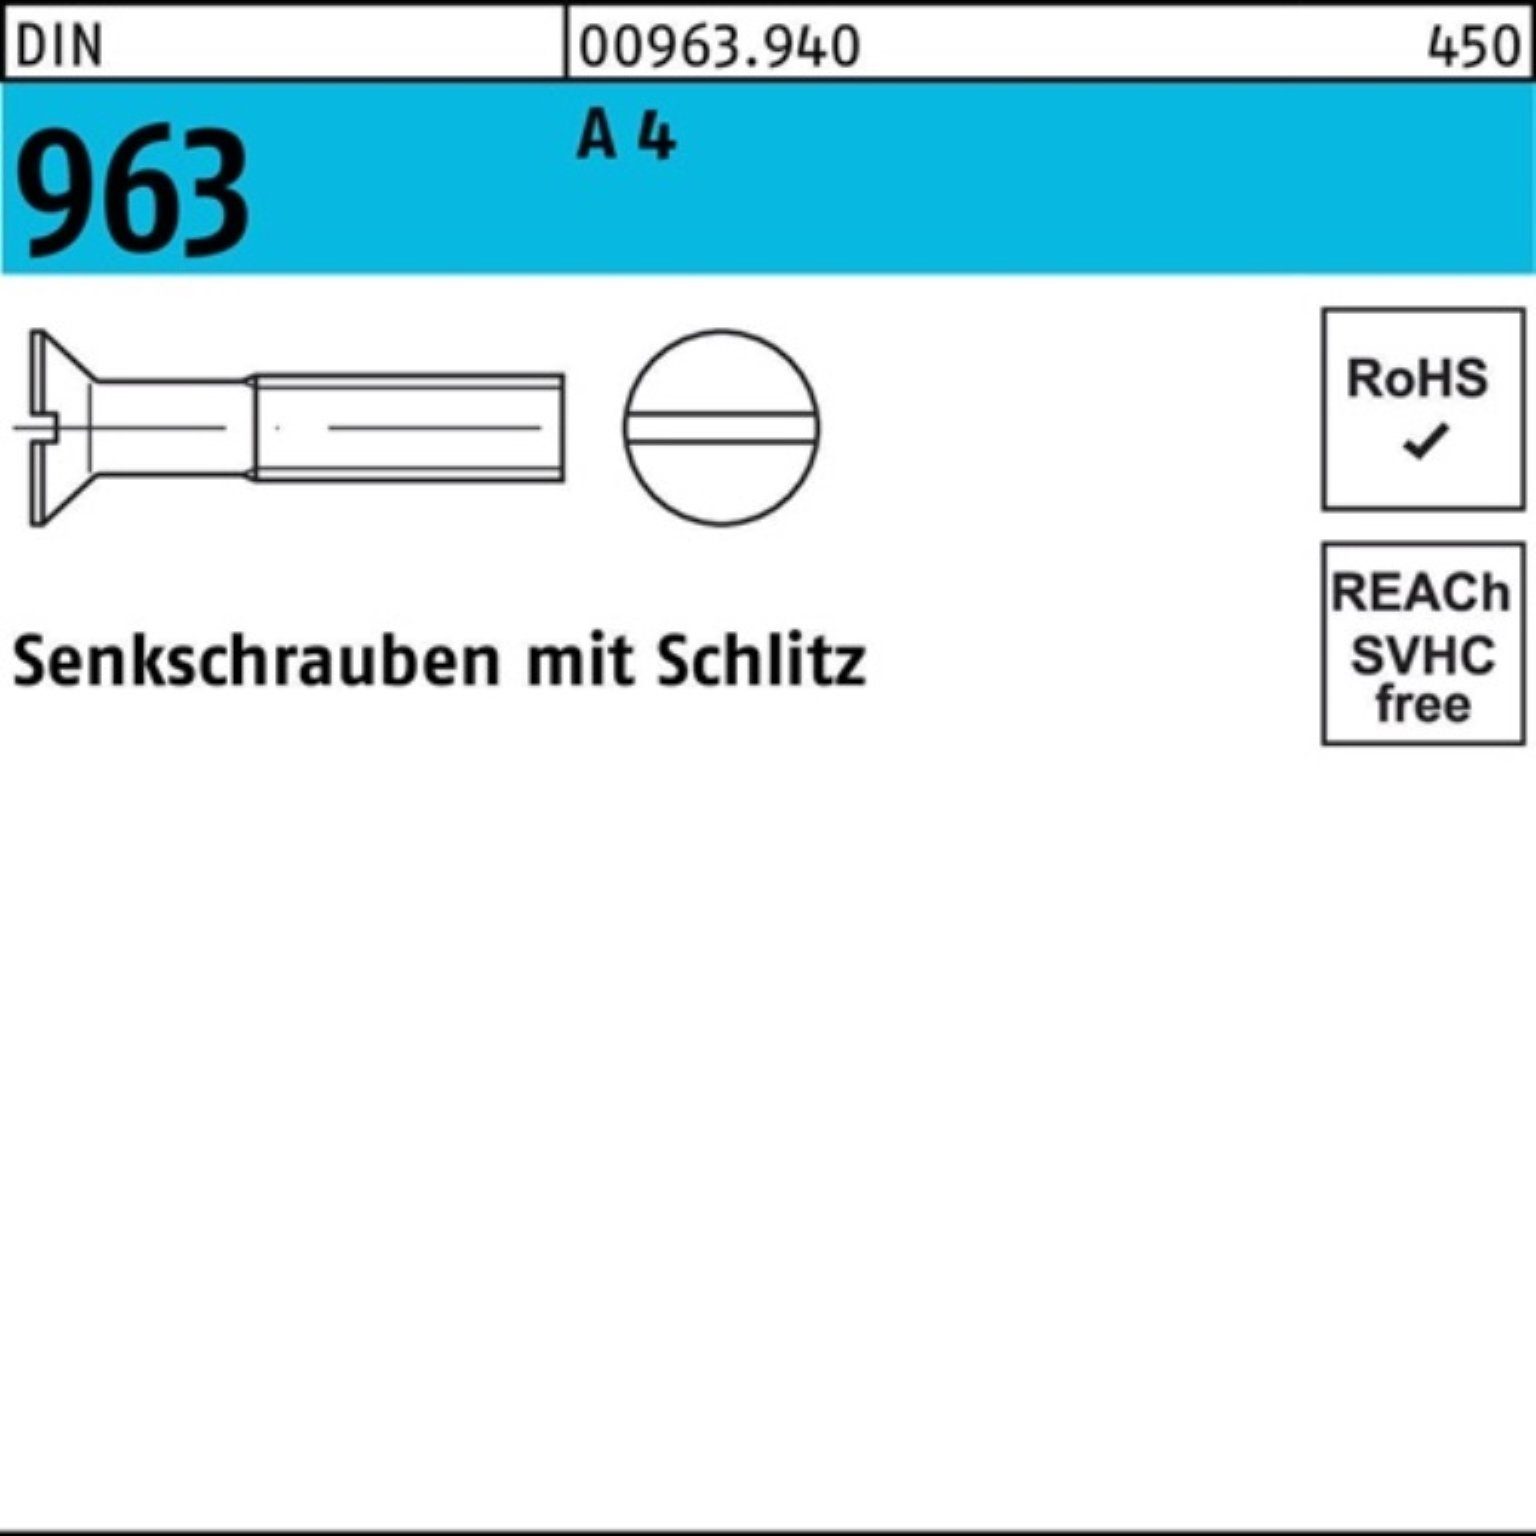 Reyher Senkschraube 100er M8x Pack 963 A 10 Stück Schlitz 50 DIN DIN 963 A 4 Senkschraube